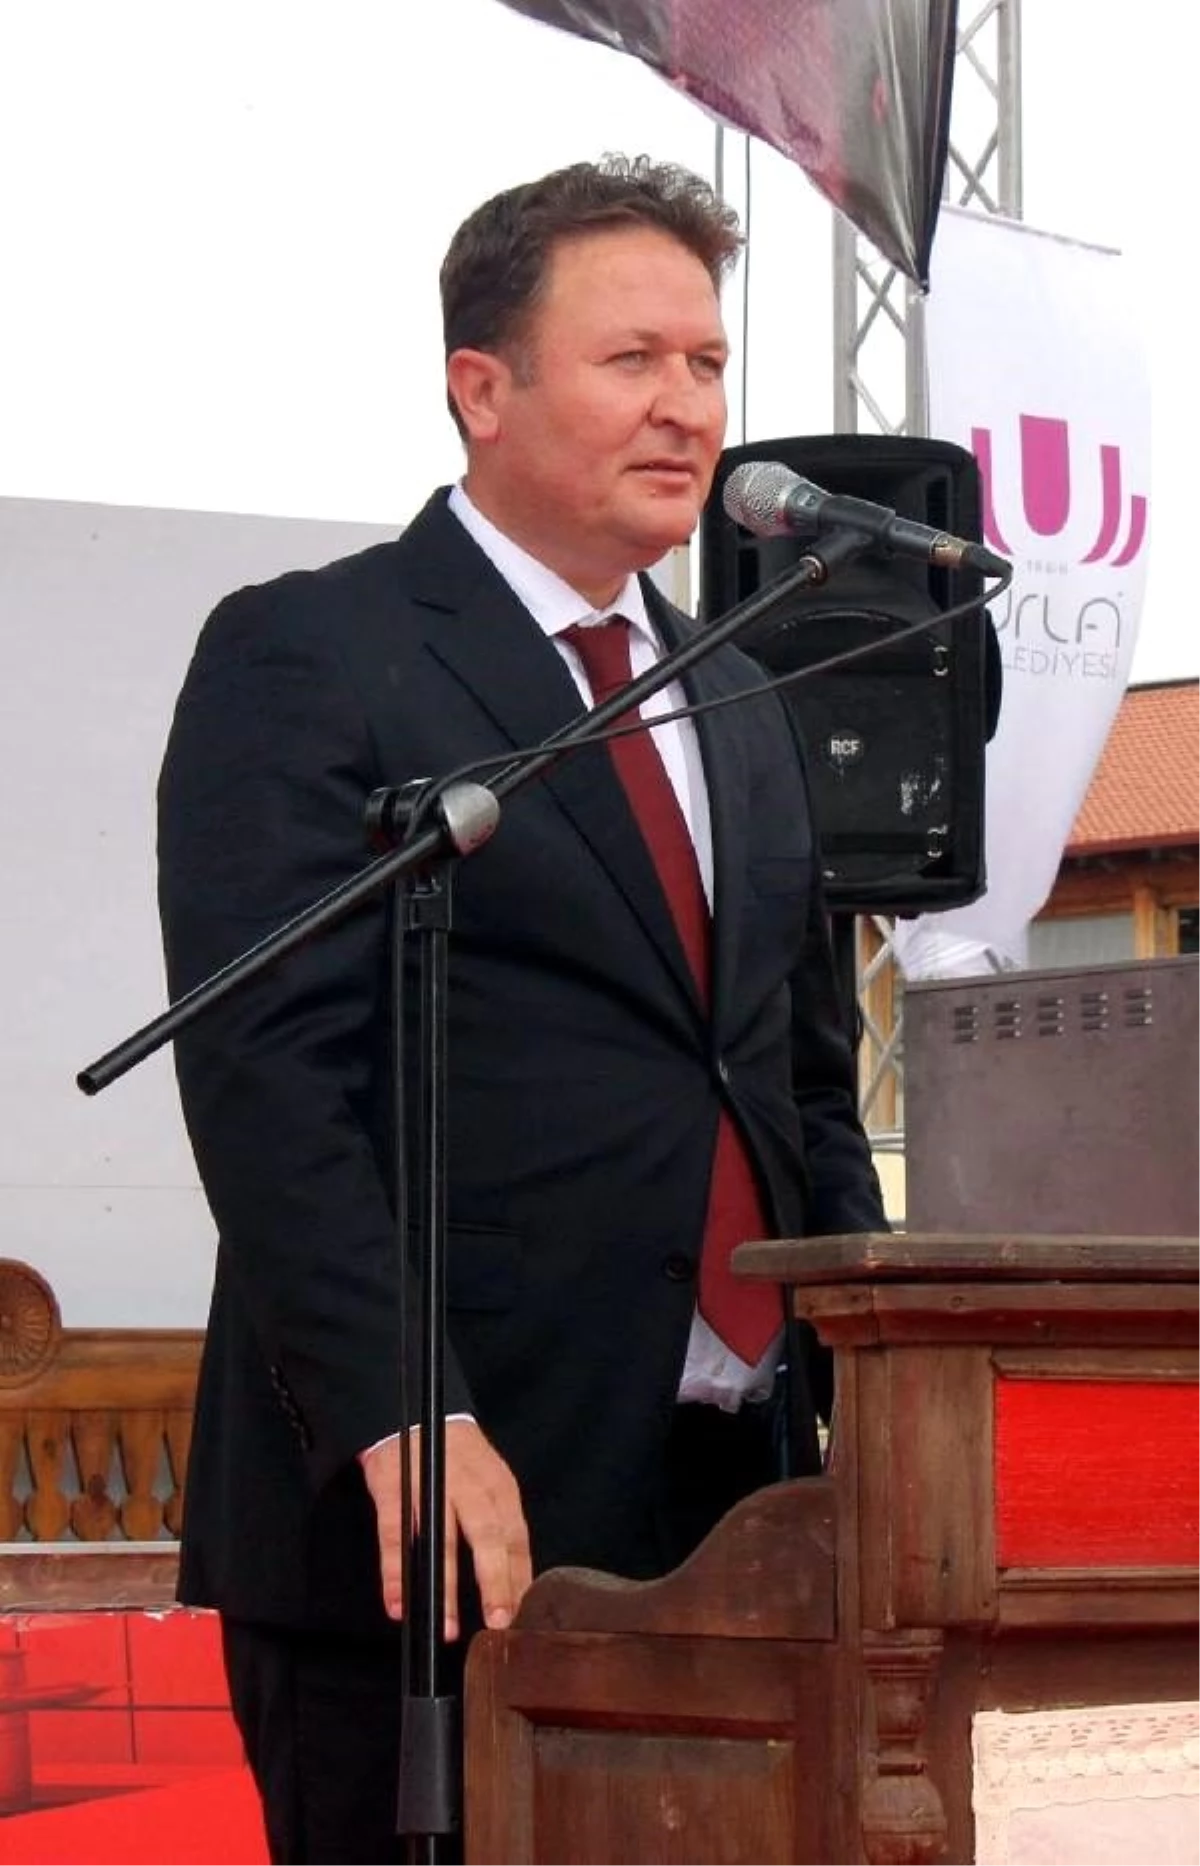 Urla Kaymakamı, Belediye Başkan Vekili olarak görevlendirildi